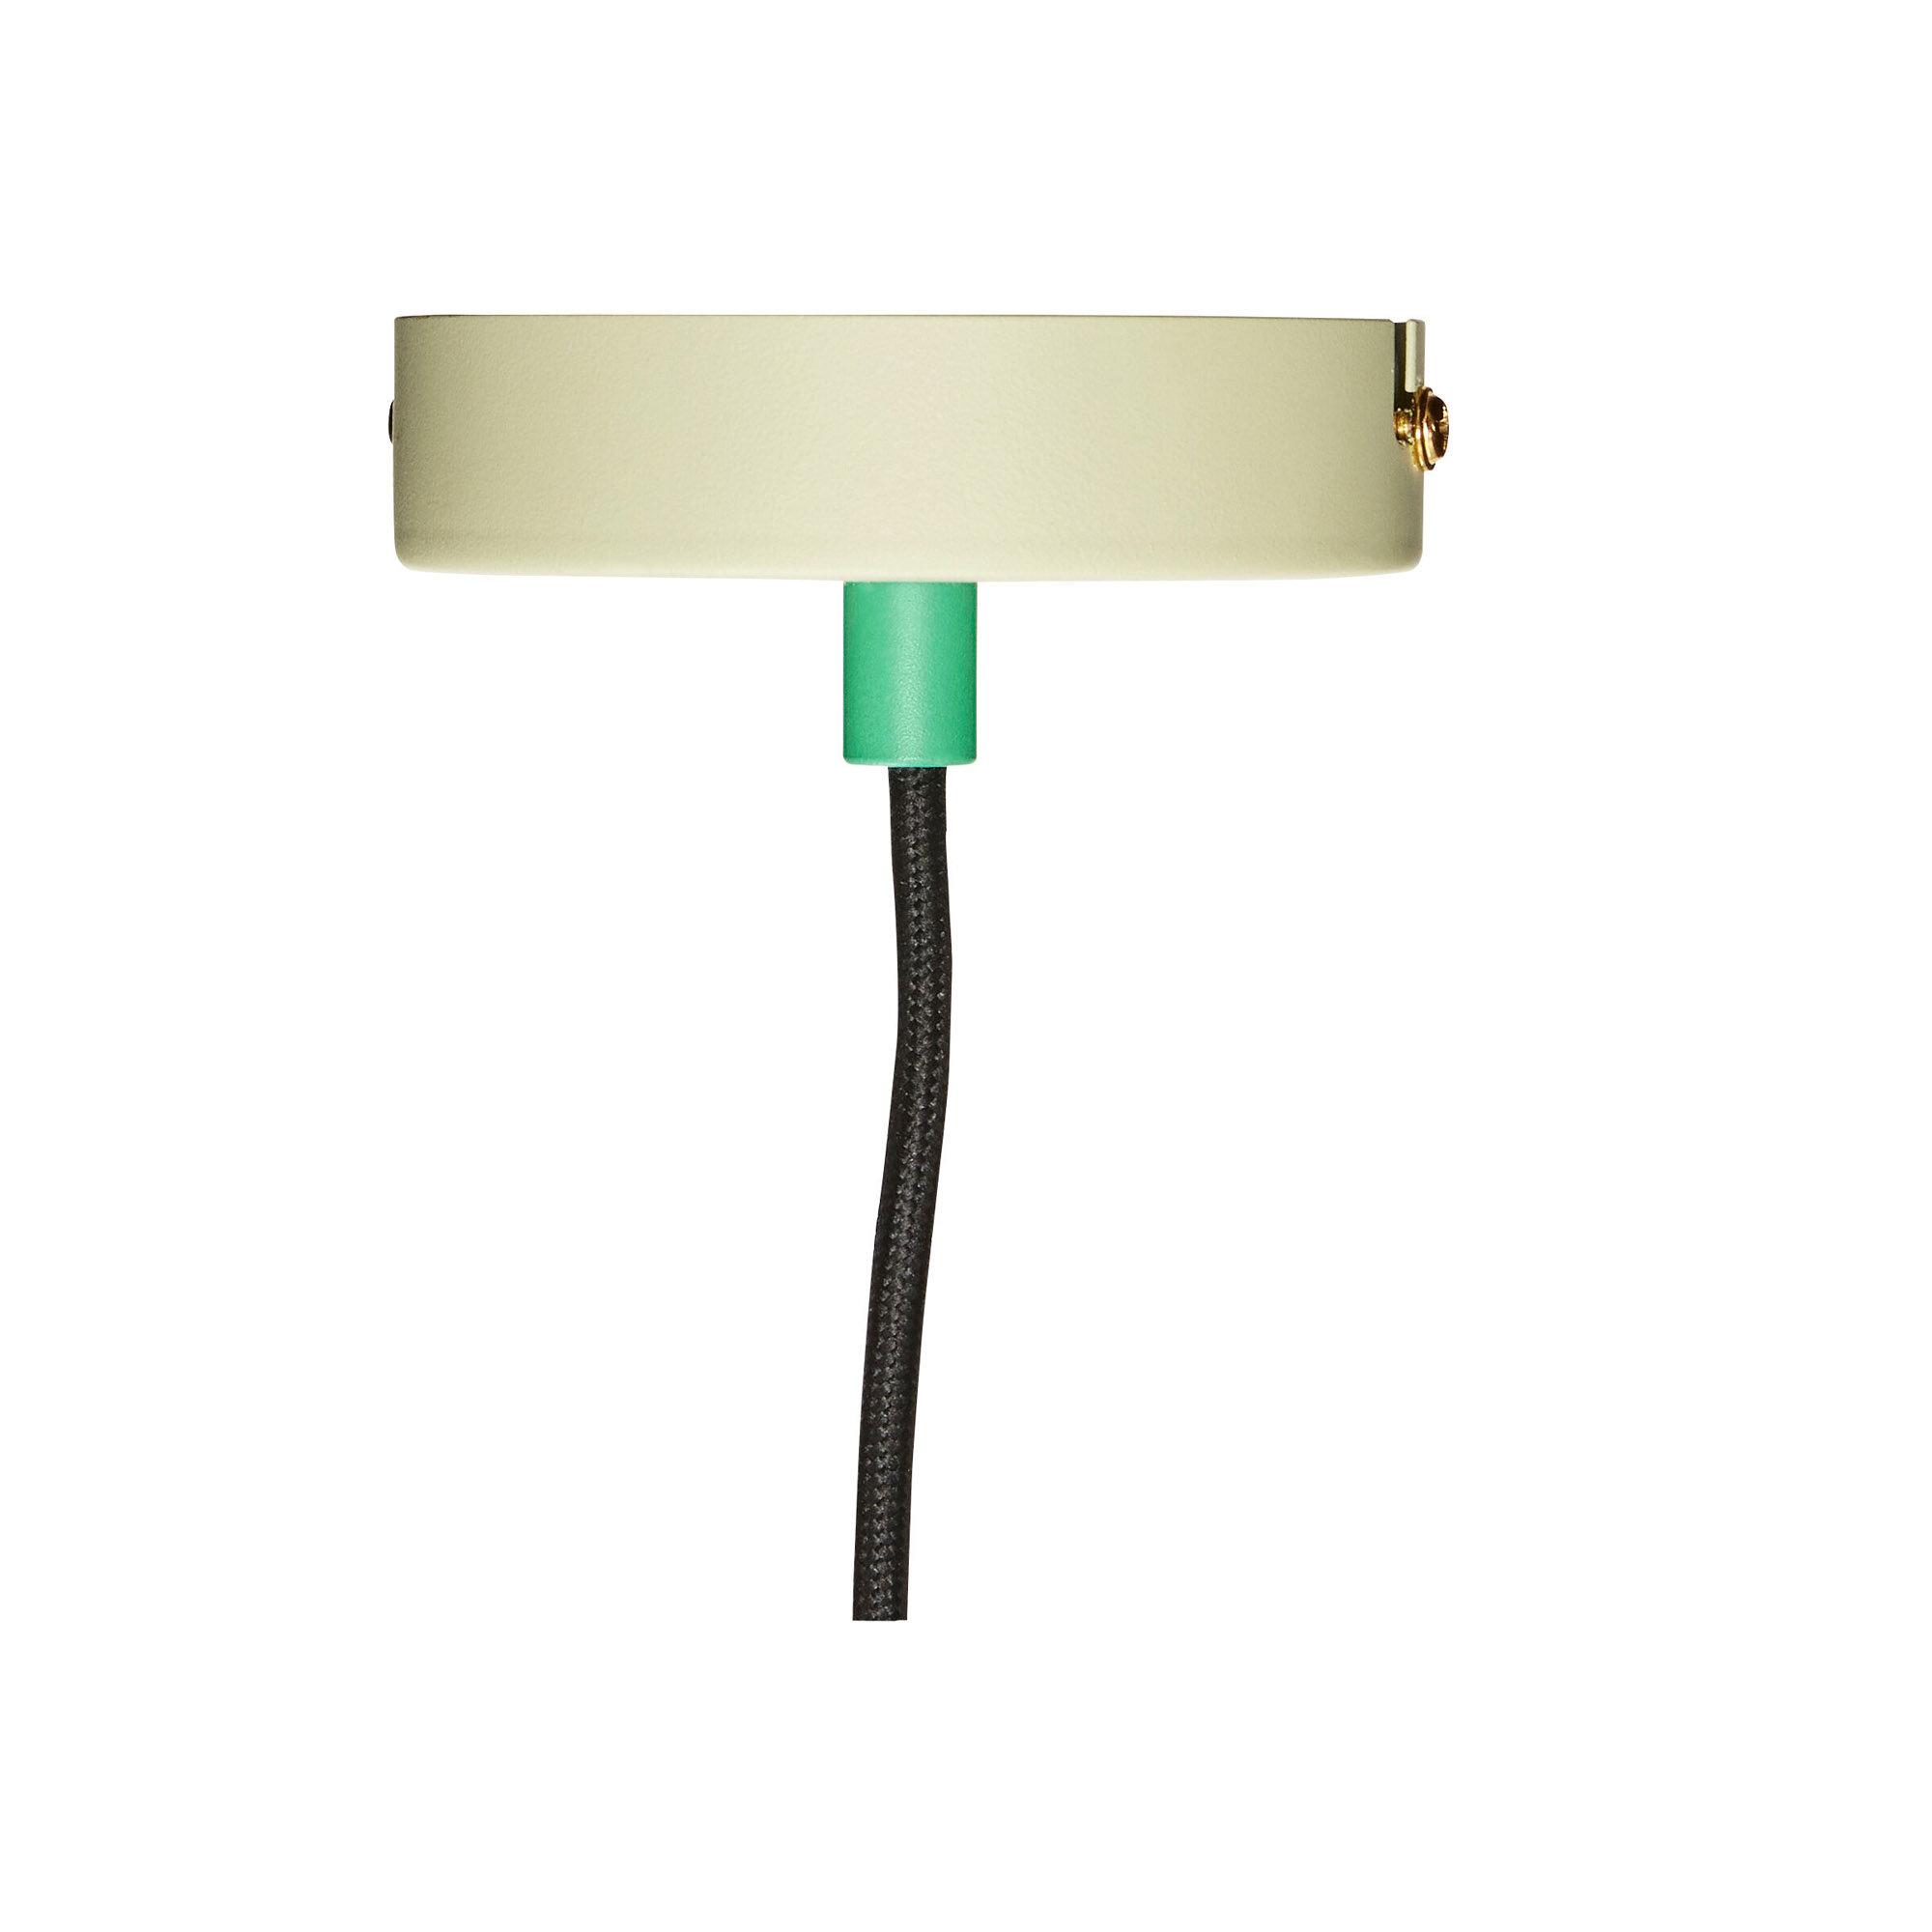  Crayon - Lampe i metal, grøn/brun/orange fra Hübsch Interiør i Metal (Varenr: 991405)